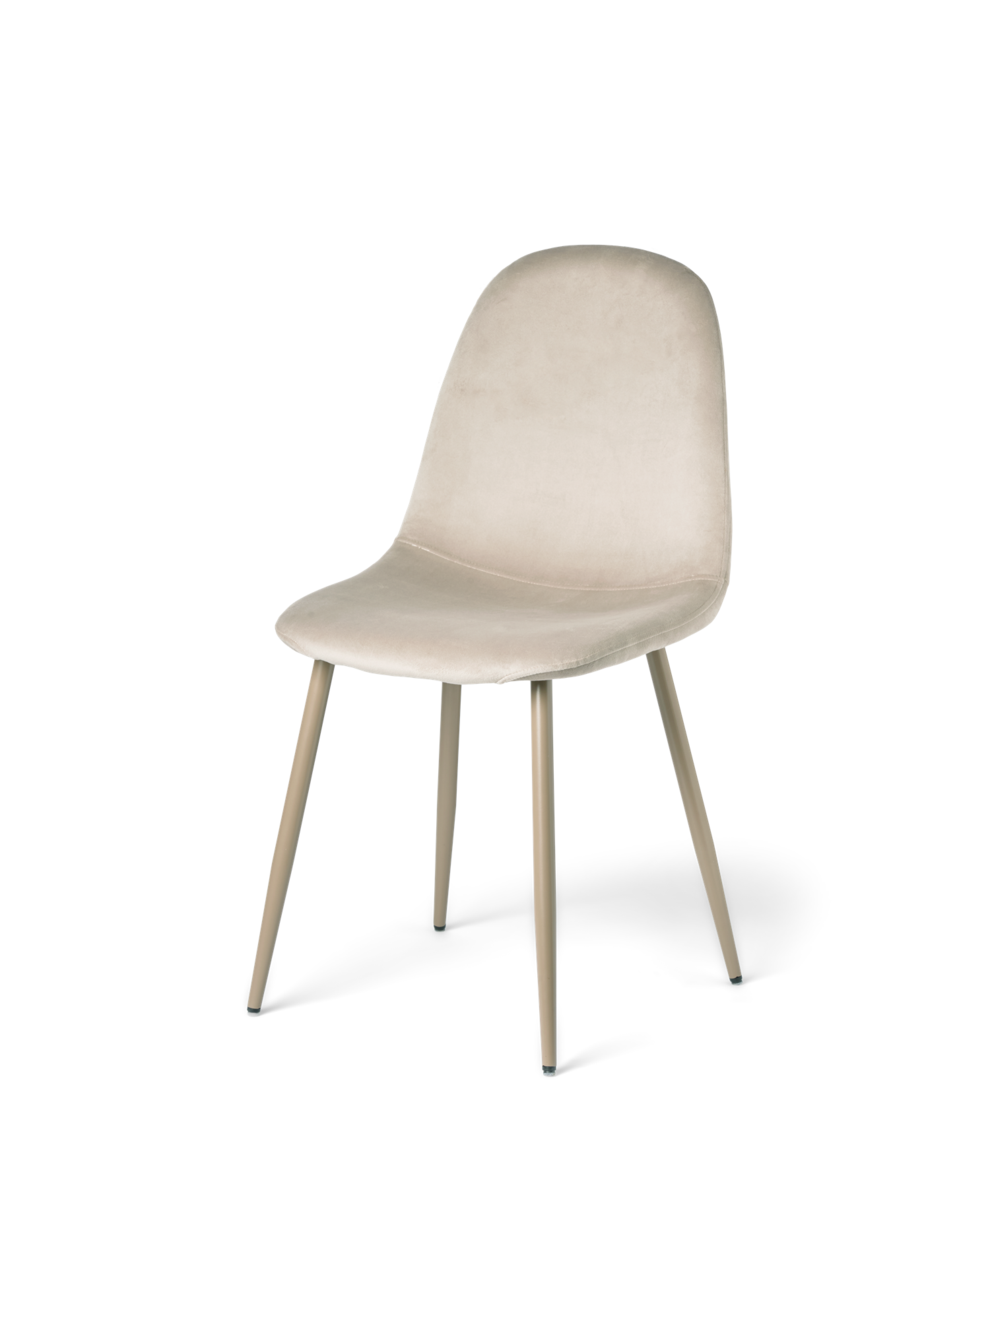 Velvet chair offers at £49.8 in Søstrene Grene